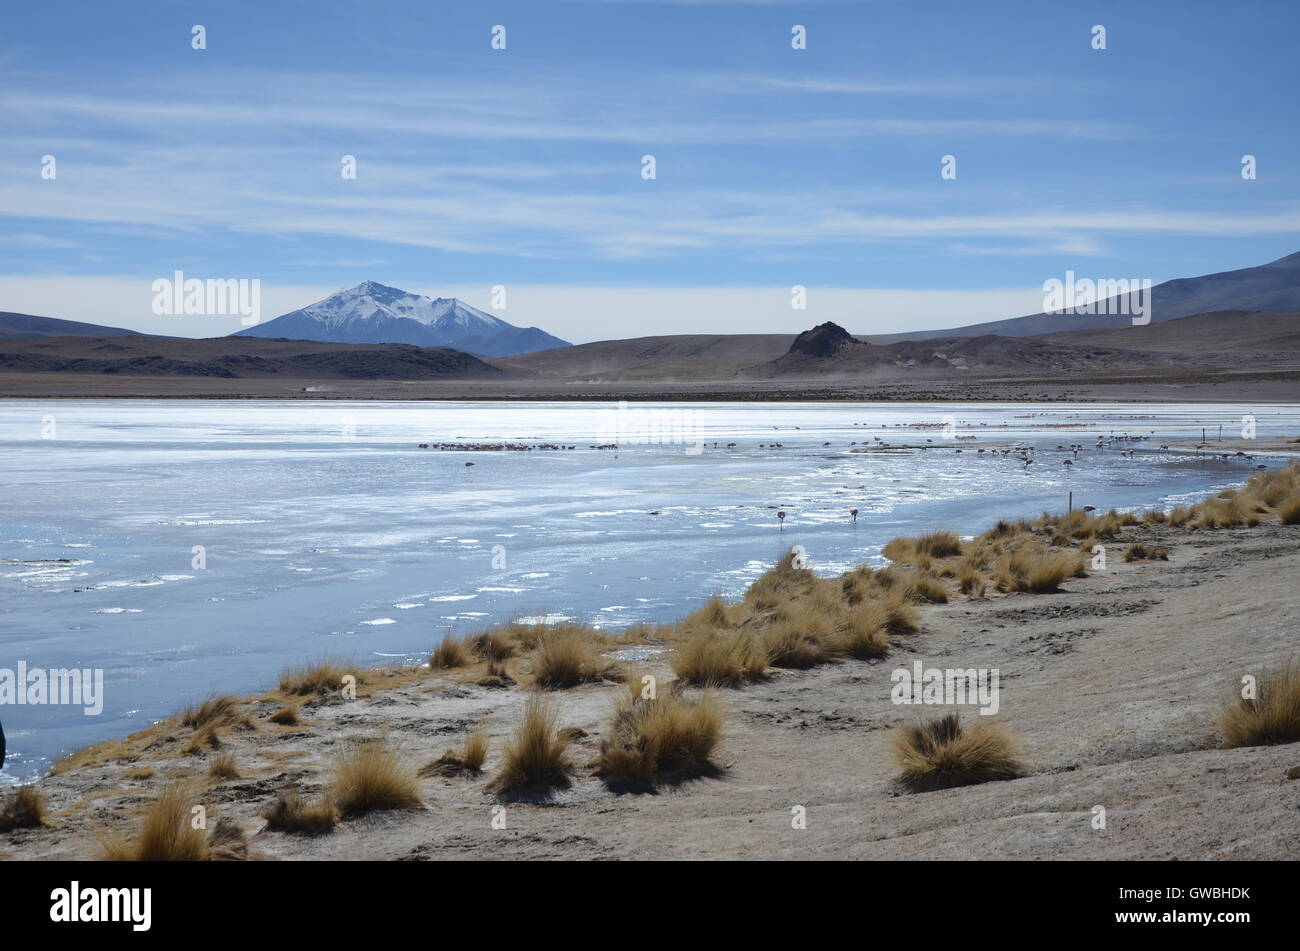 Altiplano lagoon and flamingos Stock Photo